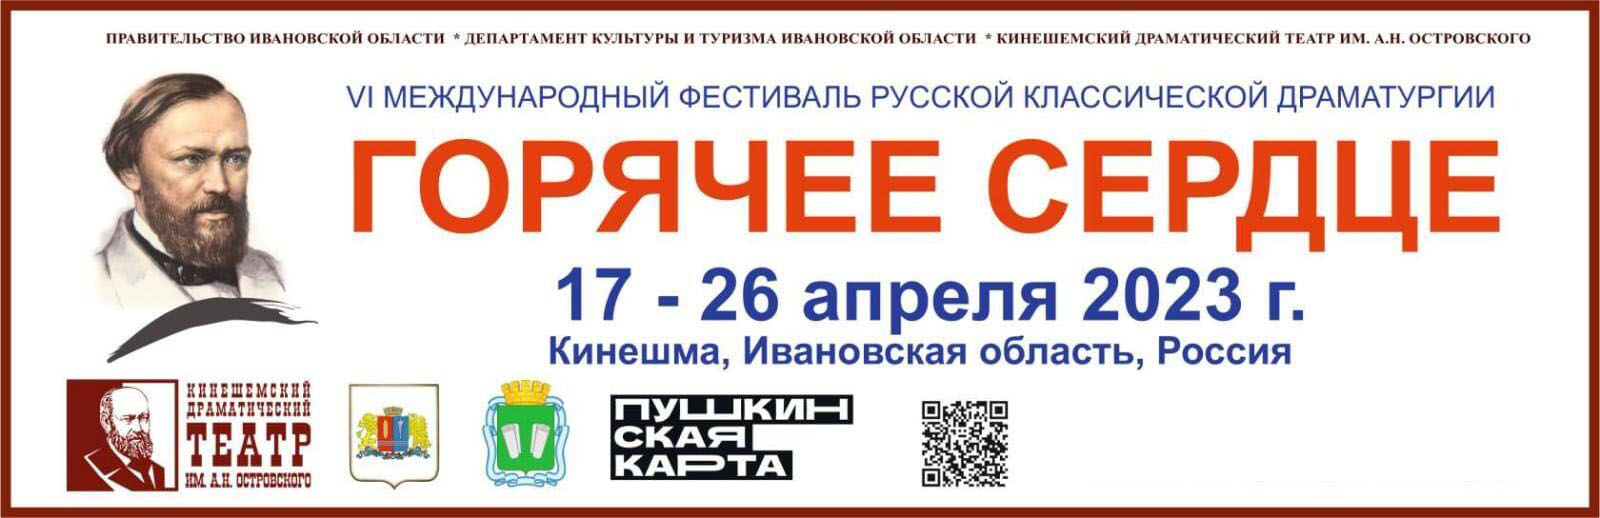 В апреле в Ивановской области пройдет VI Международный фестиваль драматургии "Горячее сердце"